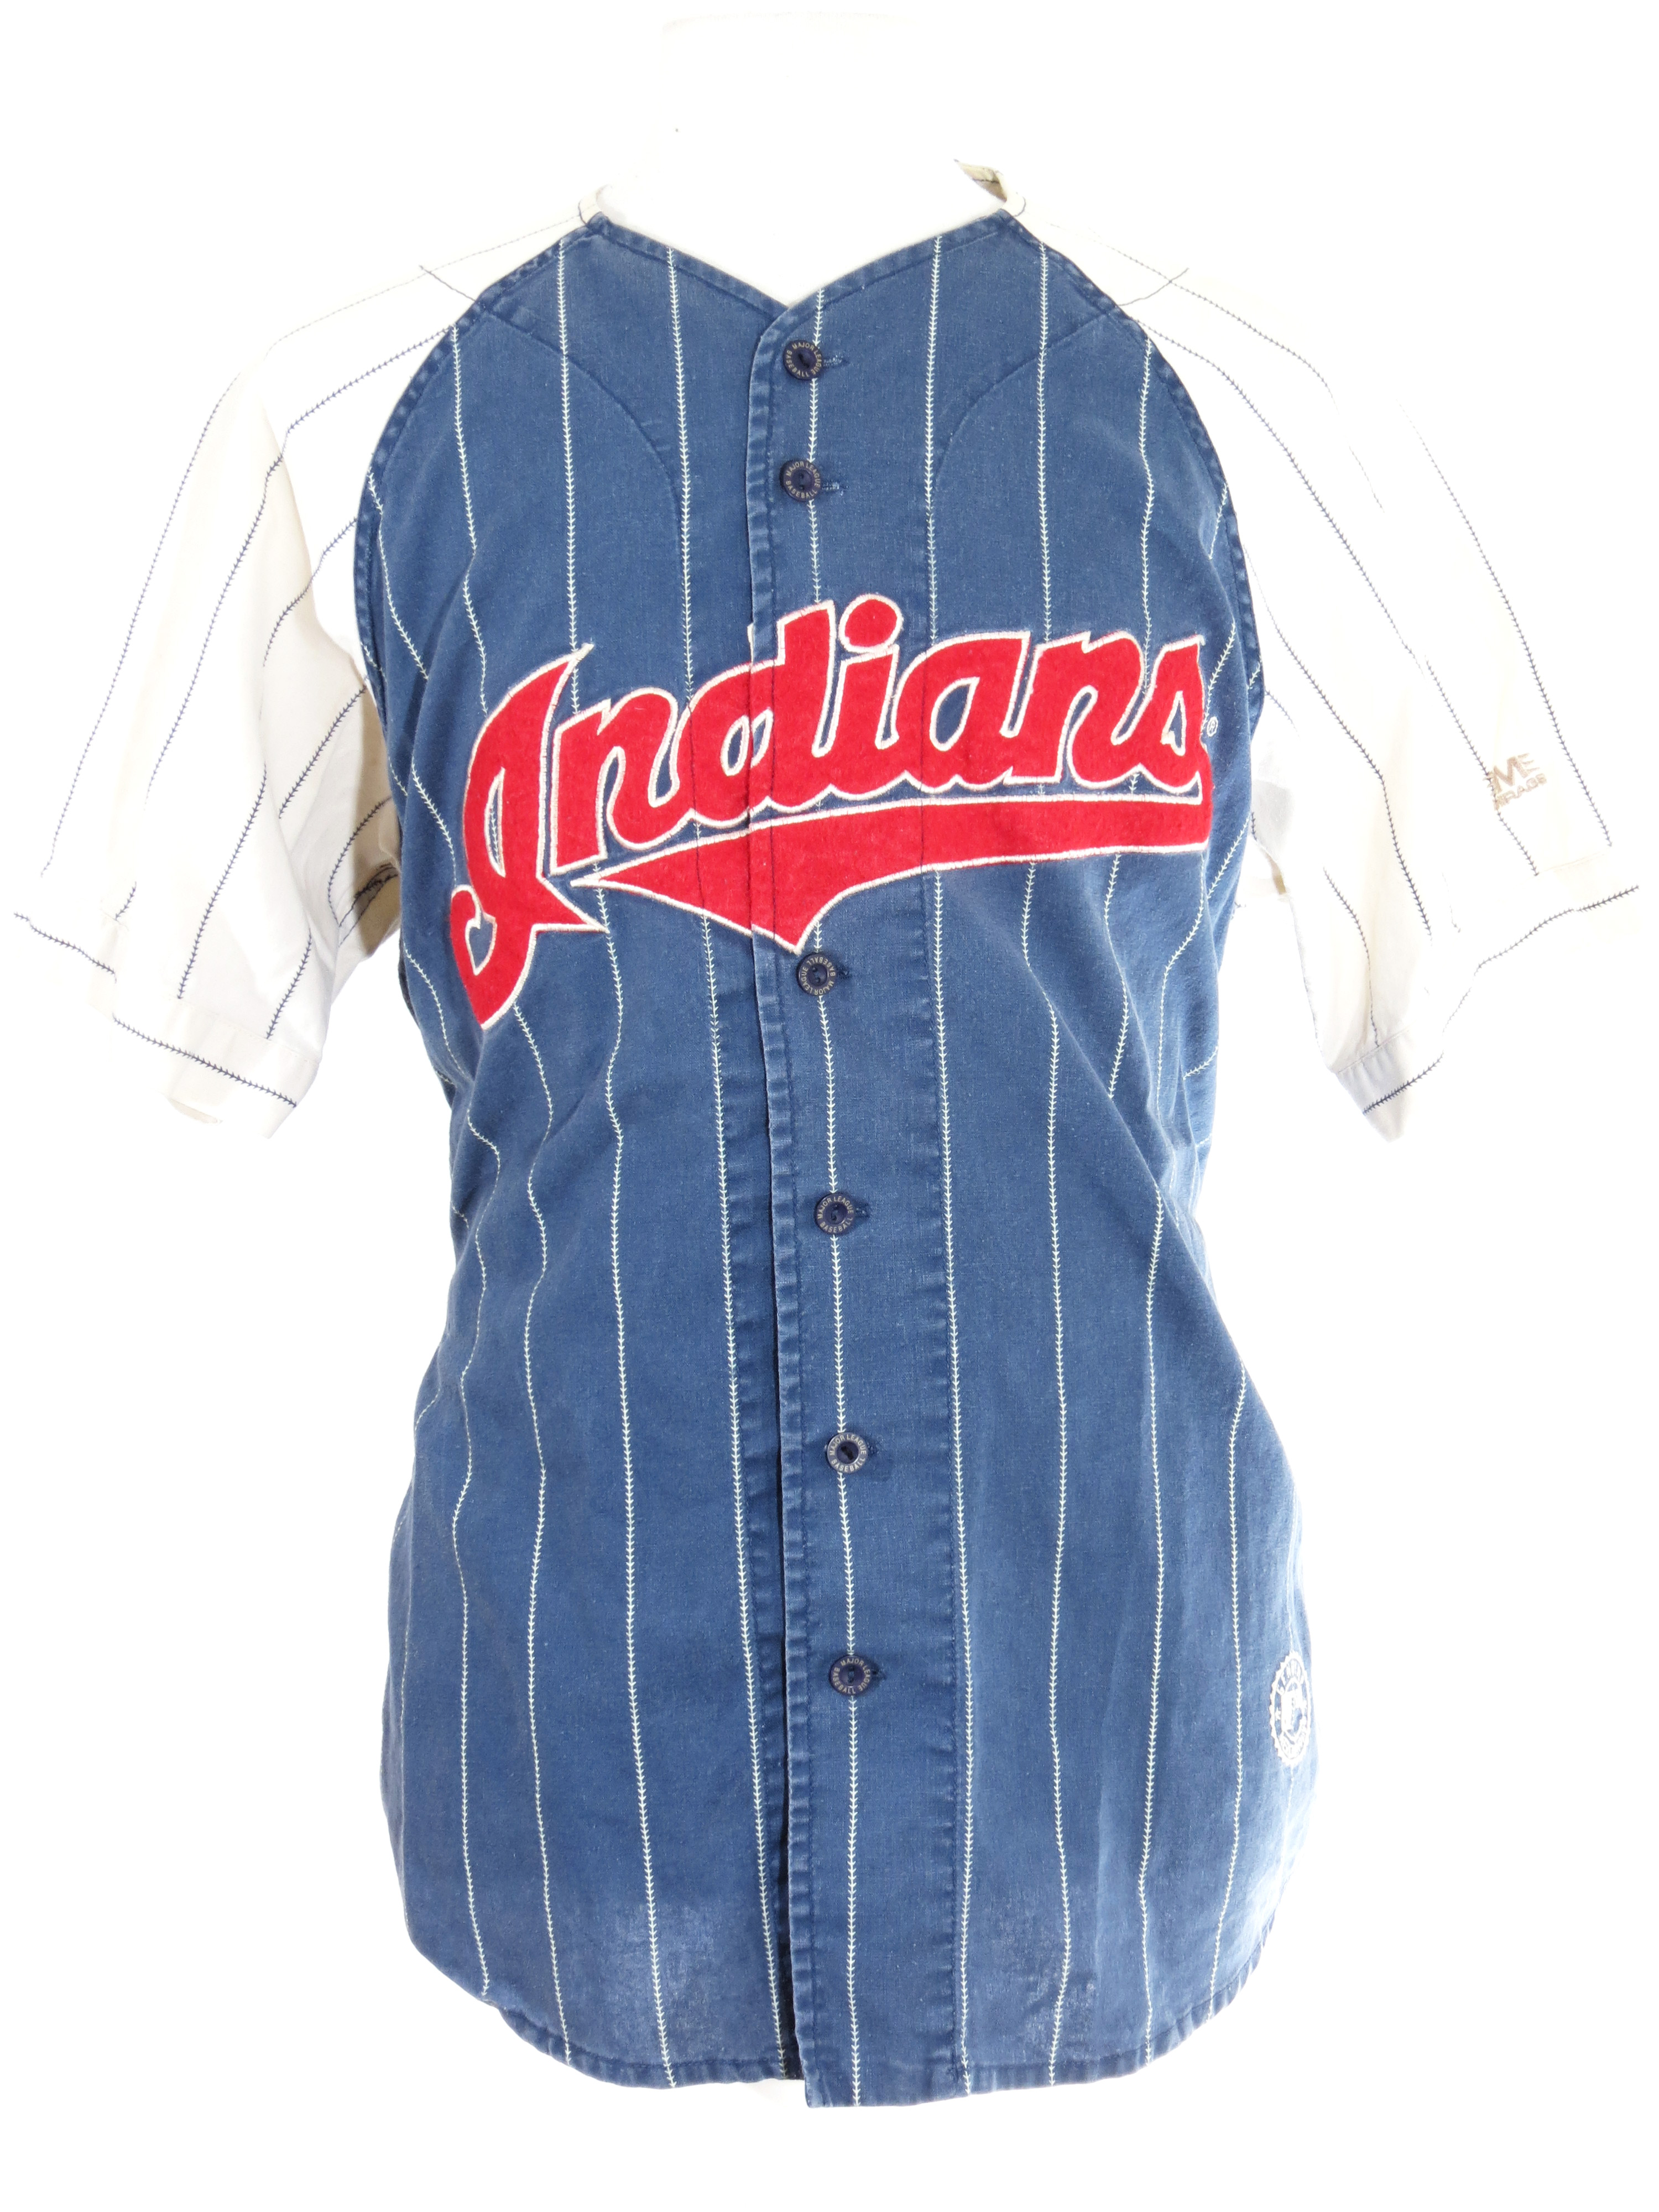 Cleveland Indians Mirage Pinstripe Cotton Jersey - 5 Star Vintage